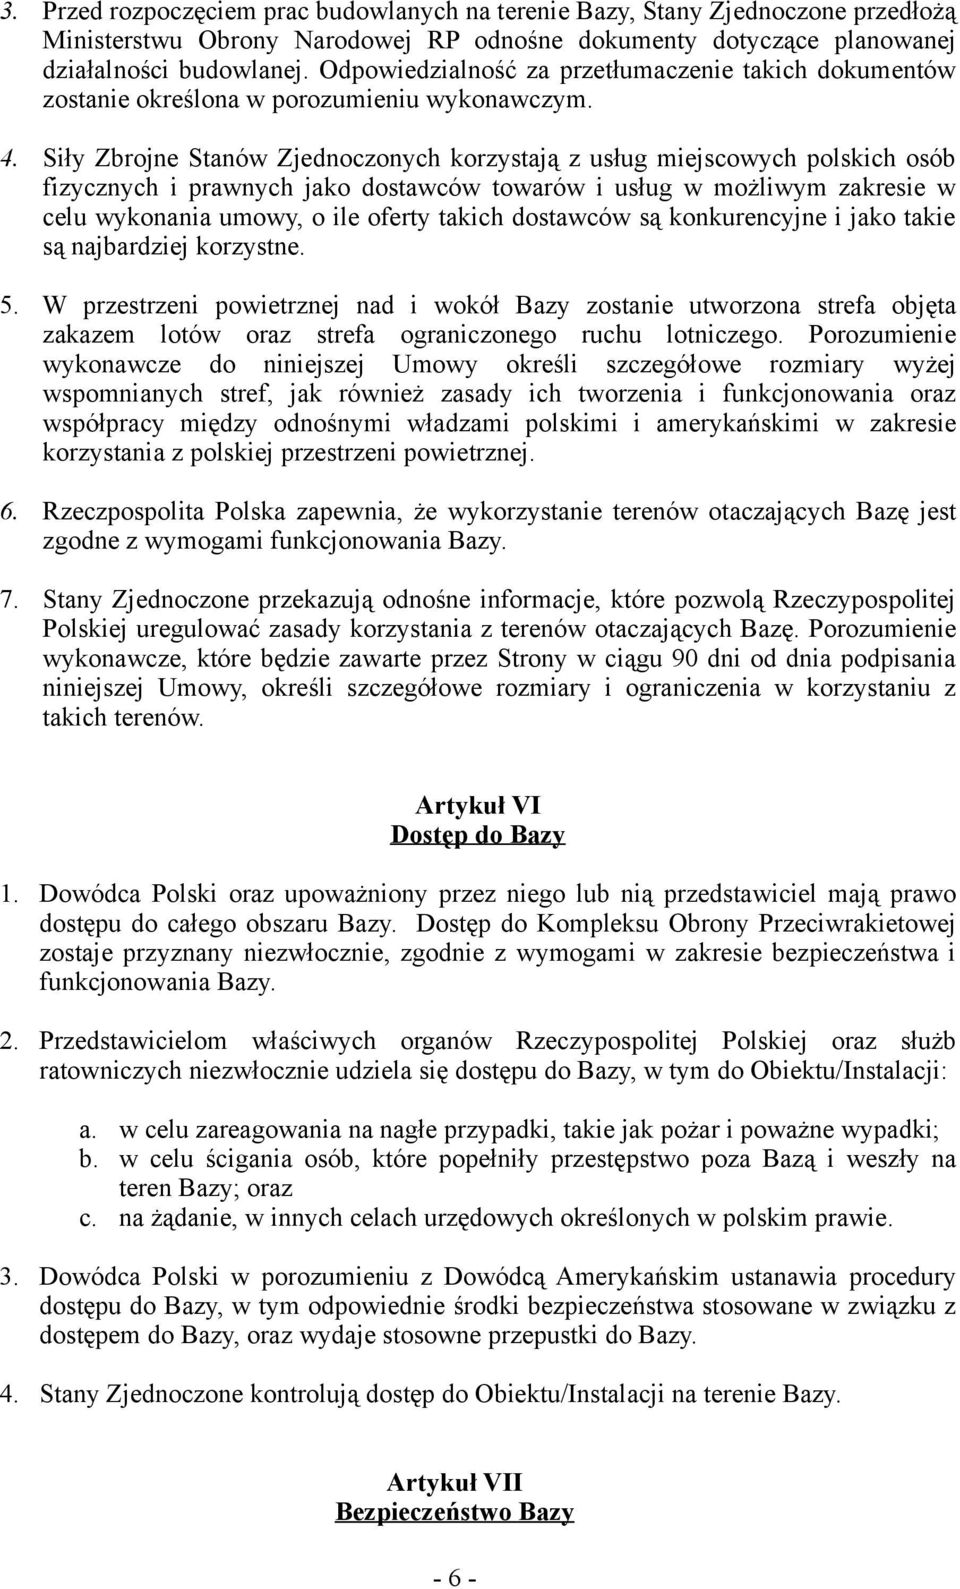 Siły Zbrojne Stanów Zjednoczonych korzystają z usług miejscowych polskich osób fizycznych i prawnych jako dostawców towarów i usług w możliwym zakresie w celu wykonania umowy, o ile oferty takich